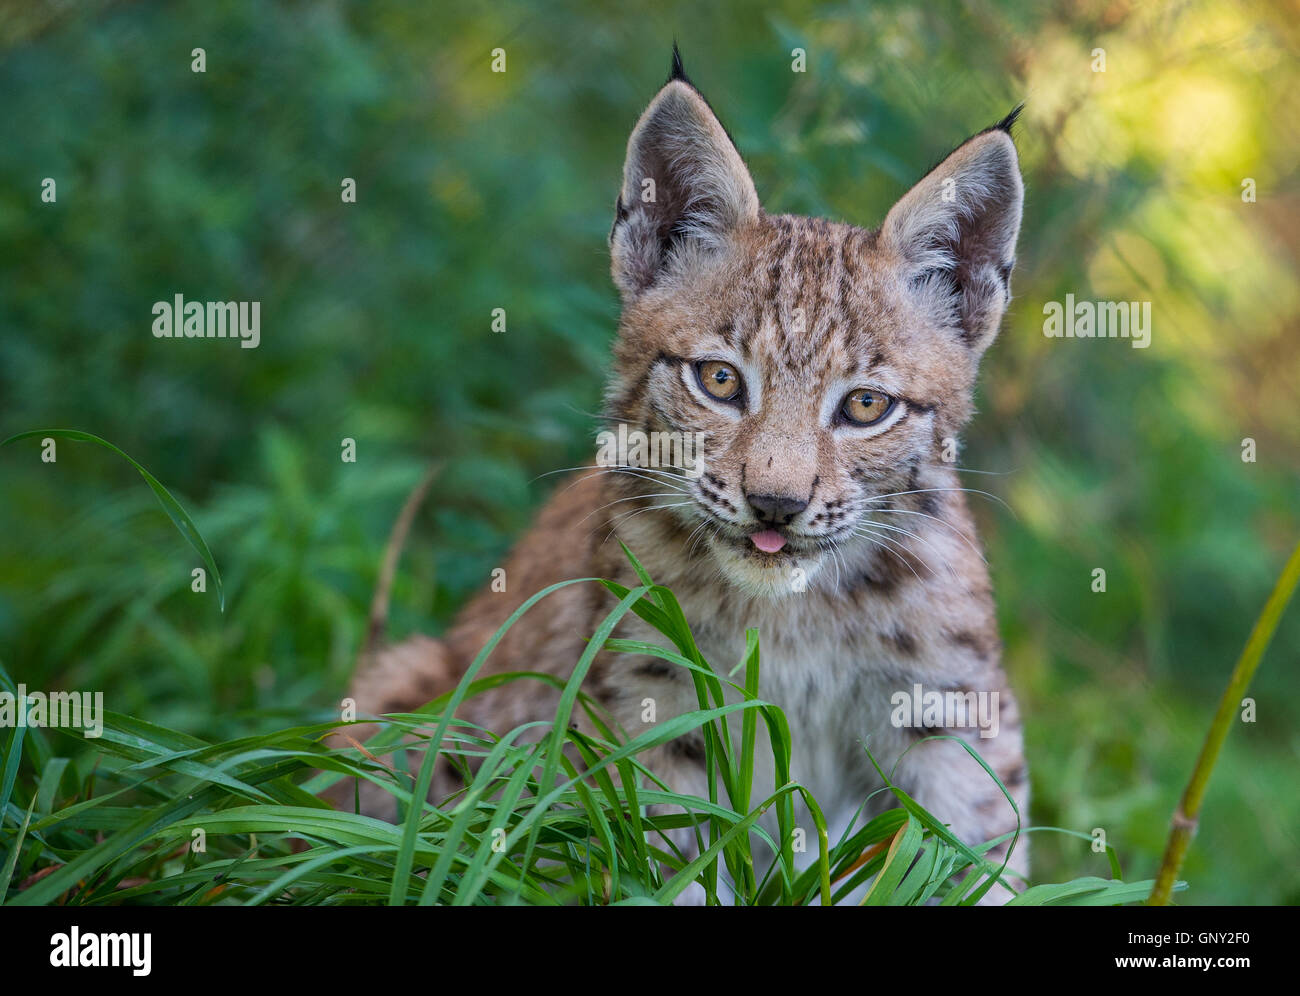 Schoenebeck brut, de l'Allemagne. Du 1er septembre 2016. Une femelle lynx (Lynx lynx) et sa progéniture peut être vu dans un enclos au parc Schorfheide brut en Allemagne, Schoenebeck, 1 septembre 2016. Deux jeunes lynx sont nés à peu près il y a deux mois et demi. Le parc nord de Berlin est habitée par des animaux et certains qui sont probablement éteintes dans la nature. PHOTO : PATRICK PLEUL/dpa/Alamy Live News Banque D'Images